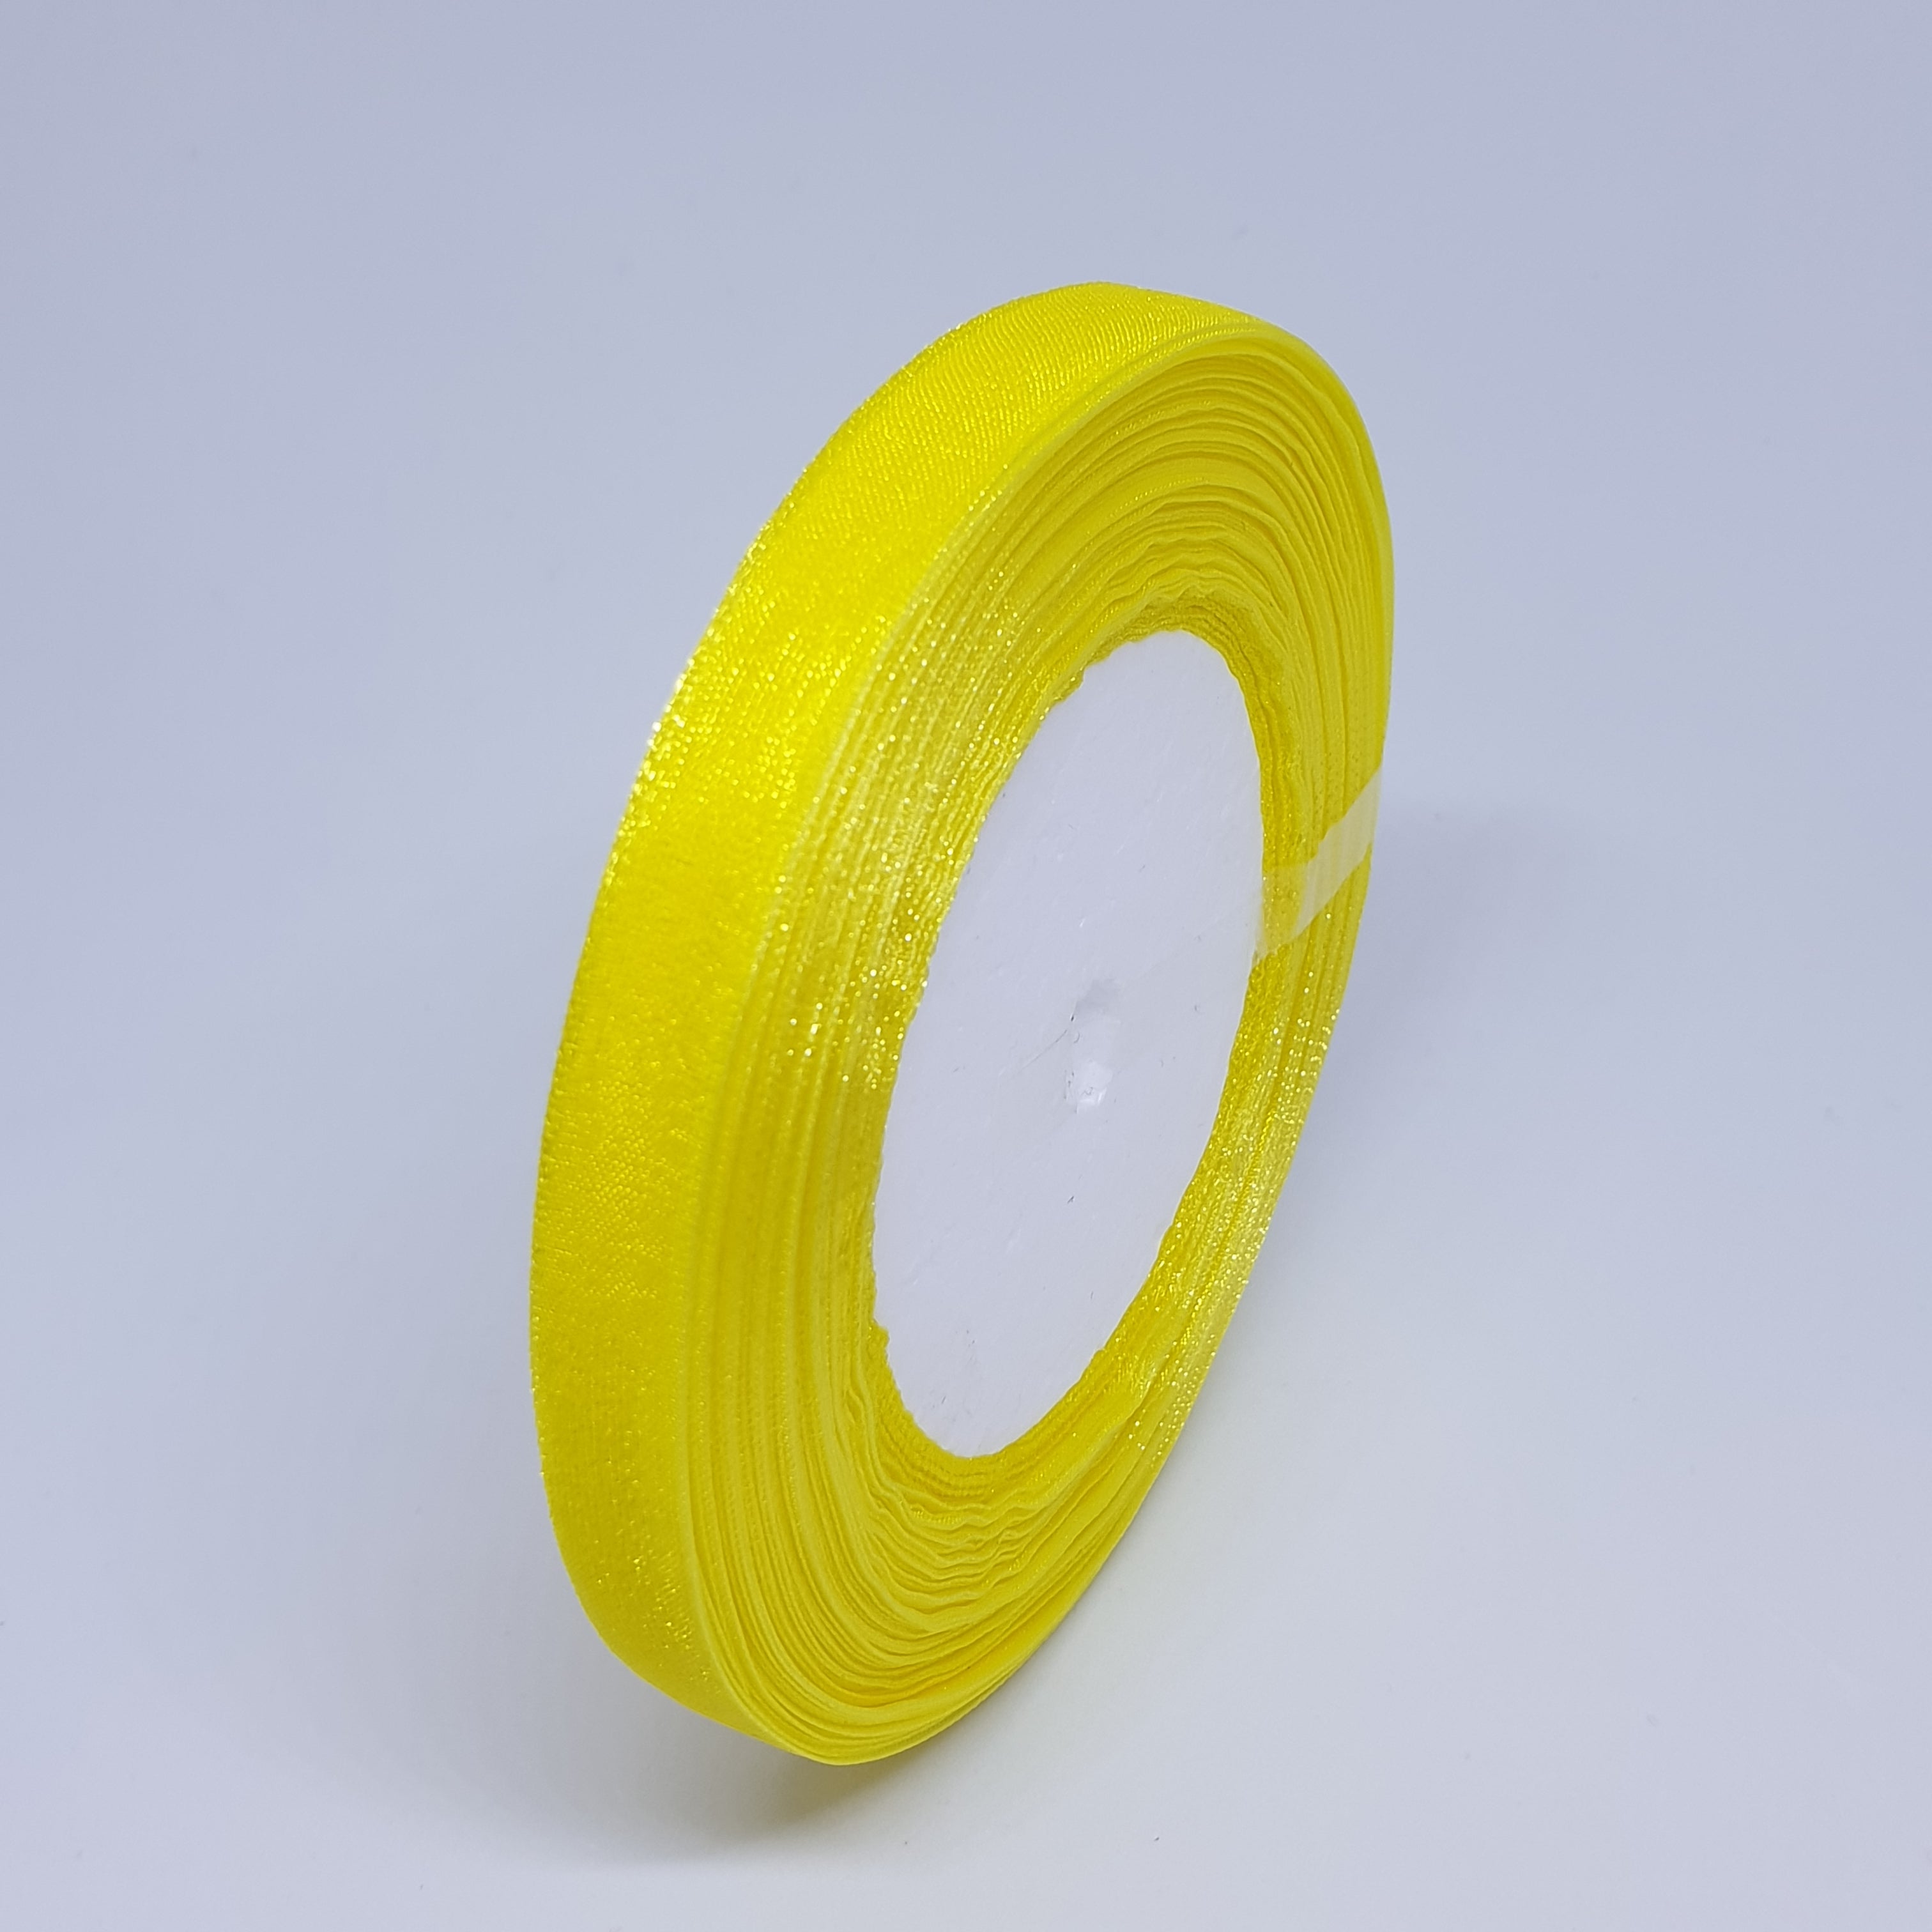 MajorCrafts 10mm 45metres Bright Yellow Sheer Organza Fabric Ribbon Roll R15